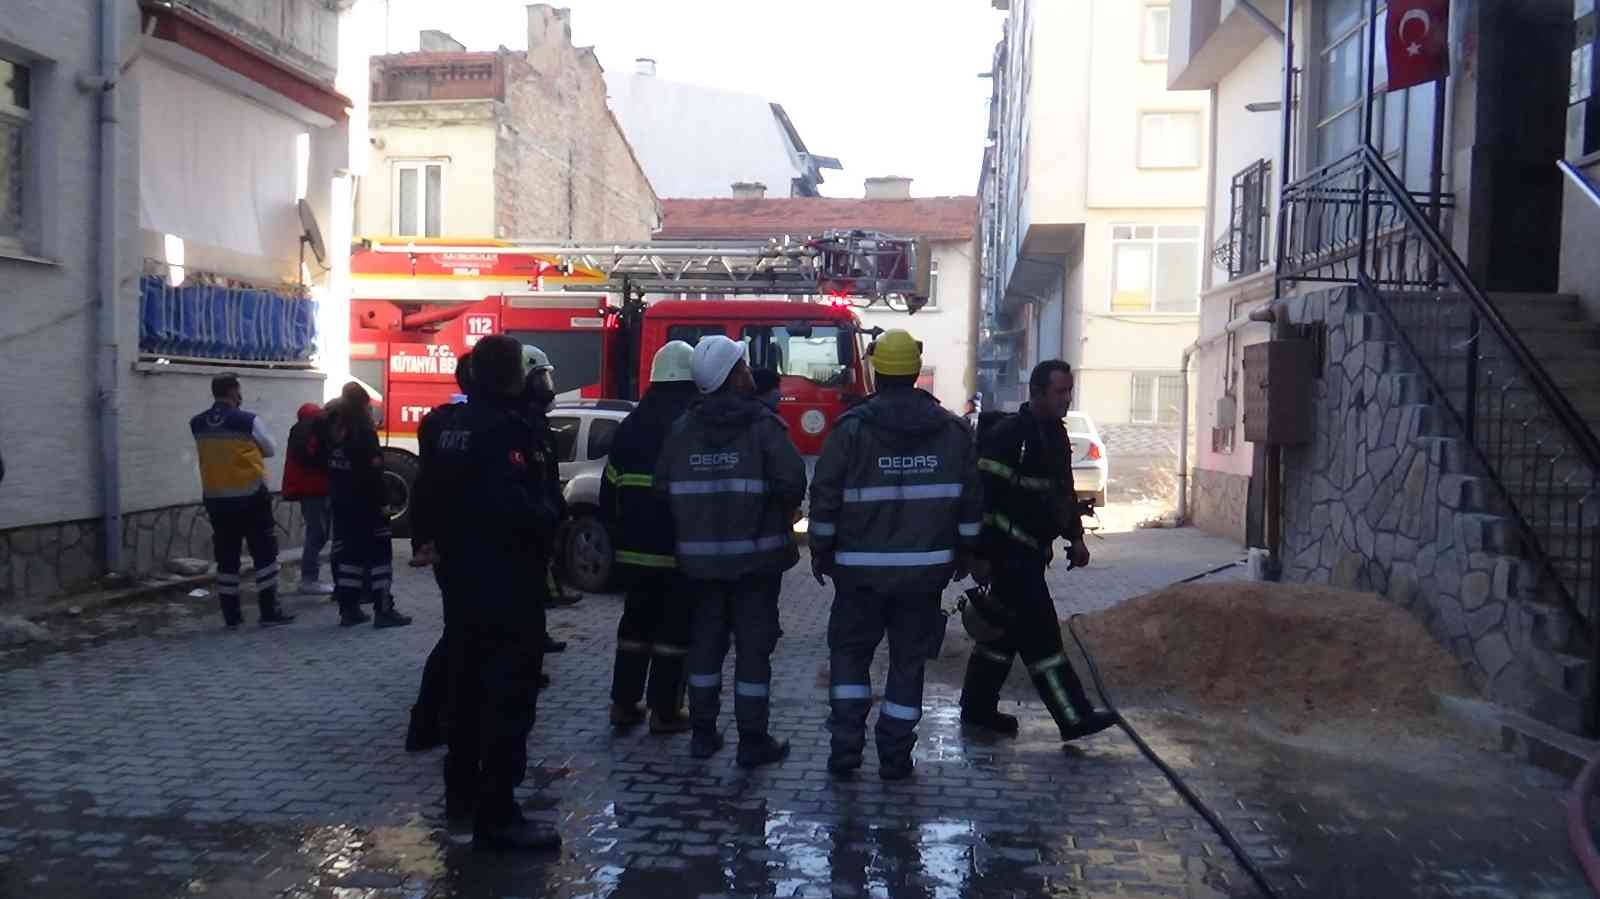 Kütahya’daki yangında 3 kişi dumandan etkilendi #kutahya